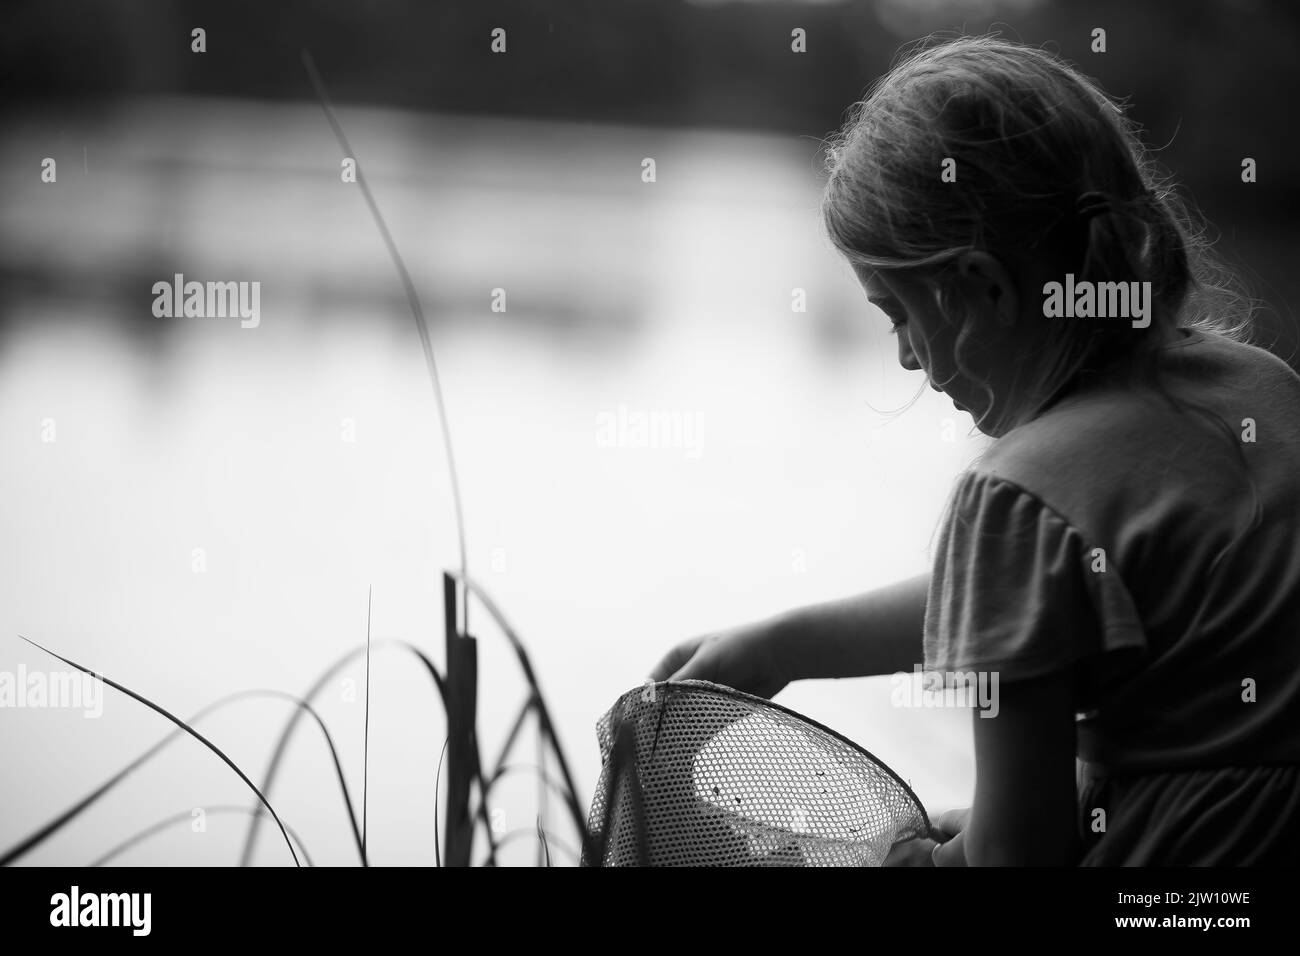 Das junge kaukasische Mädchen sitzt an einem See und erkundet, was sie in ihrem Netz hat. Stockfoto